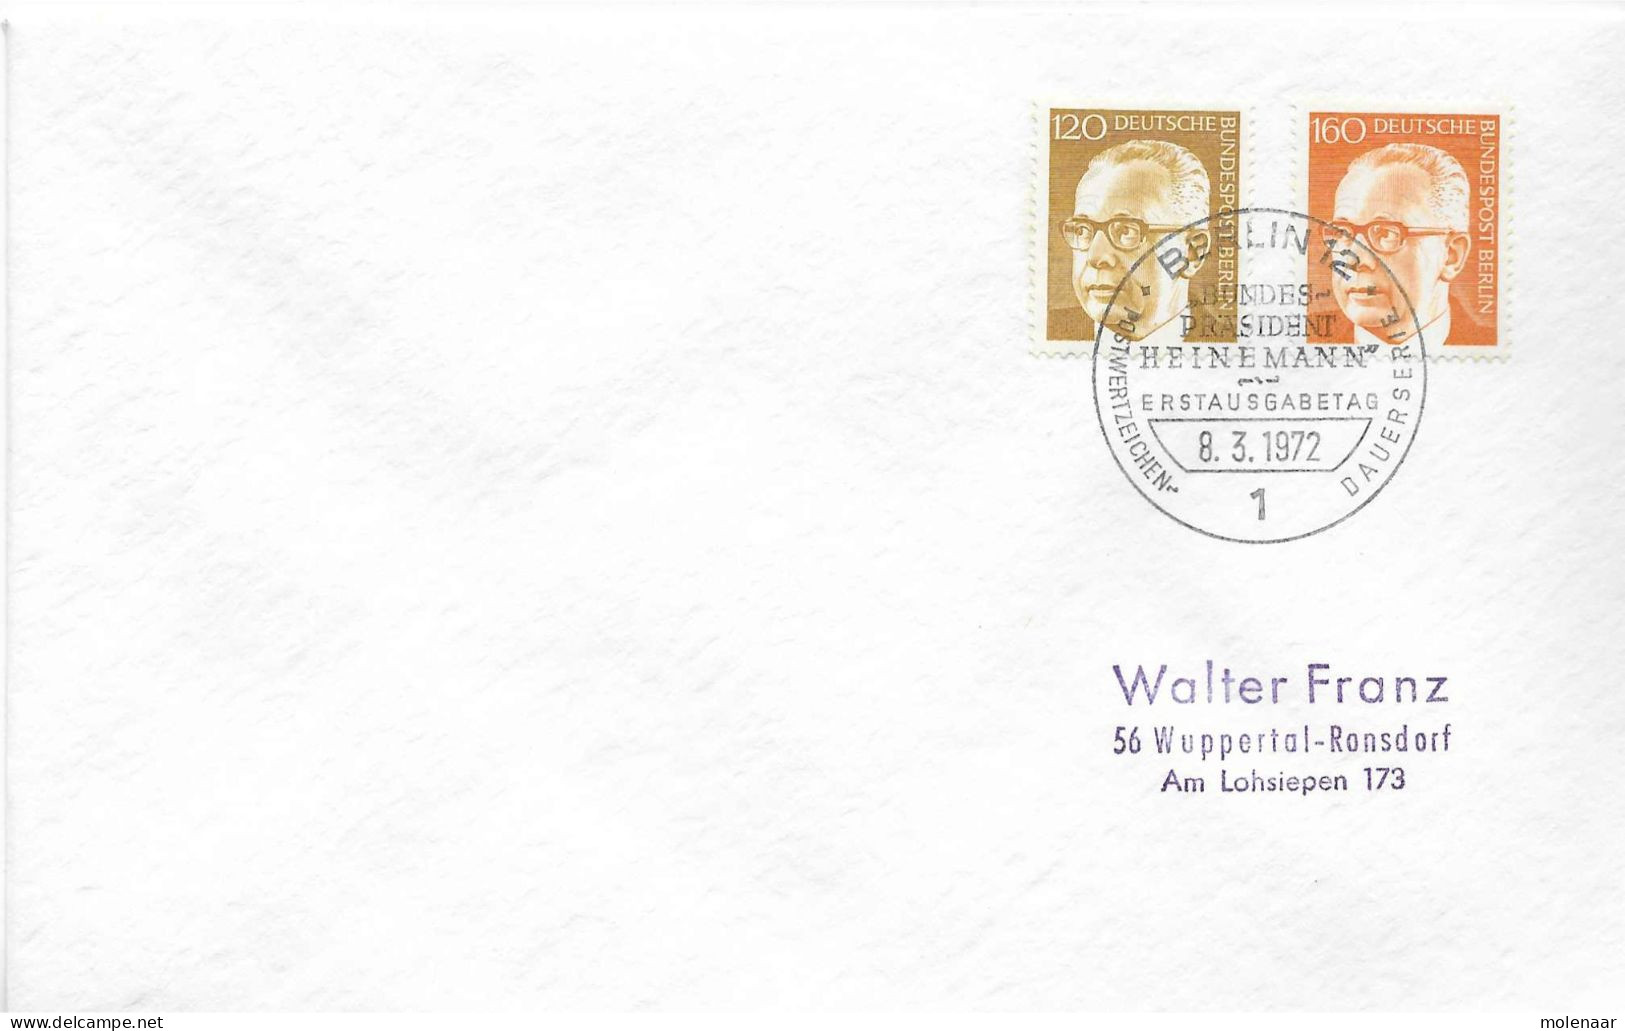 Postzegels > Europa > Duitsland > Berlijn > 1970-1979 > Brief Met No. 395 En 396 (17295) - Briefe U. Dokumente